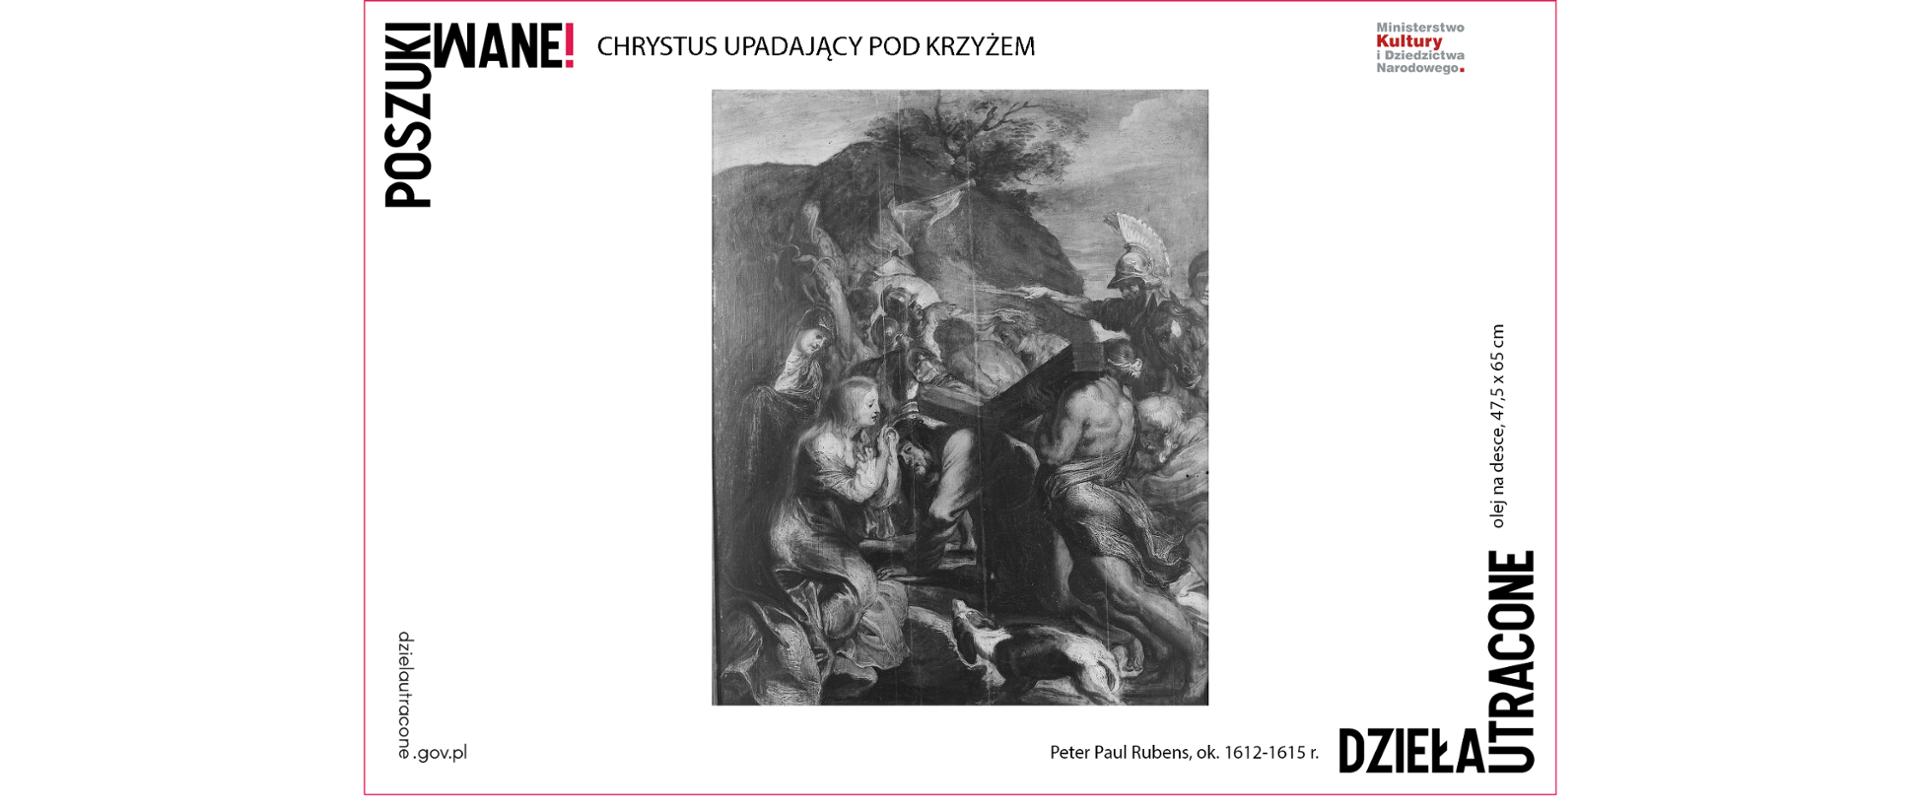 Chrystus upadający pod krzyżem, Peter Paul Rubens, ok. 1612-1615 r., olej na desce, 47,5 x 65 cm